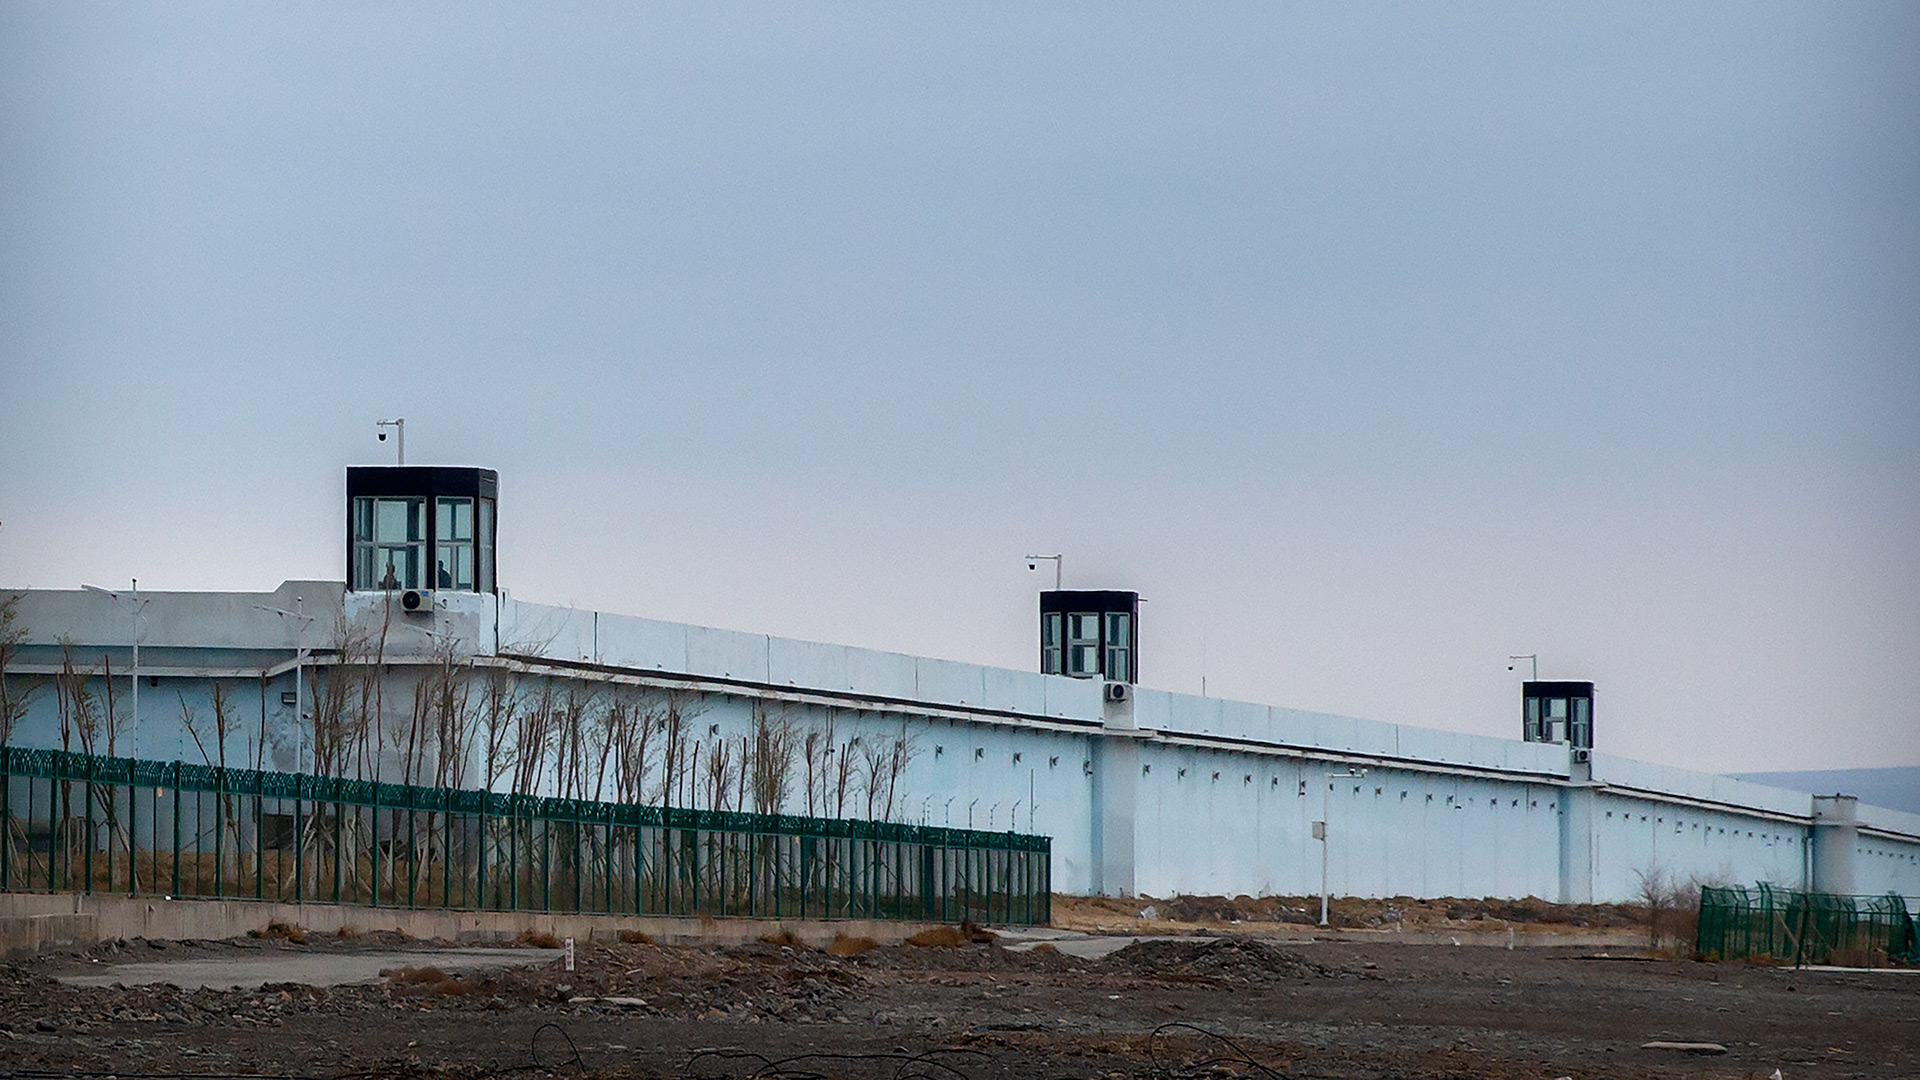 Unas personas permanecen en una torre de vigilancia en el muro perimetral del Centro de Detención nº 3 de Urumqi, en Dabancheng, en la región autónoma uigur de Xinjiang, en el oeste de China, el 23 de abril de 2021 (AP Photo/Mark Schiefelbein)